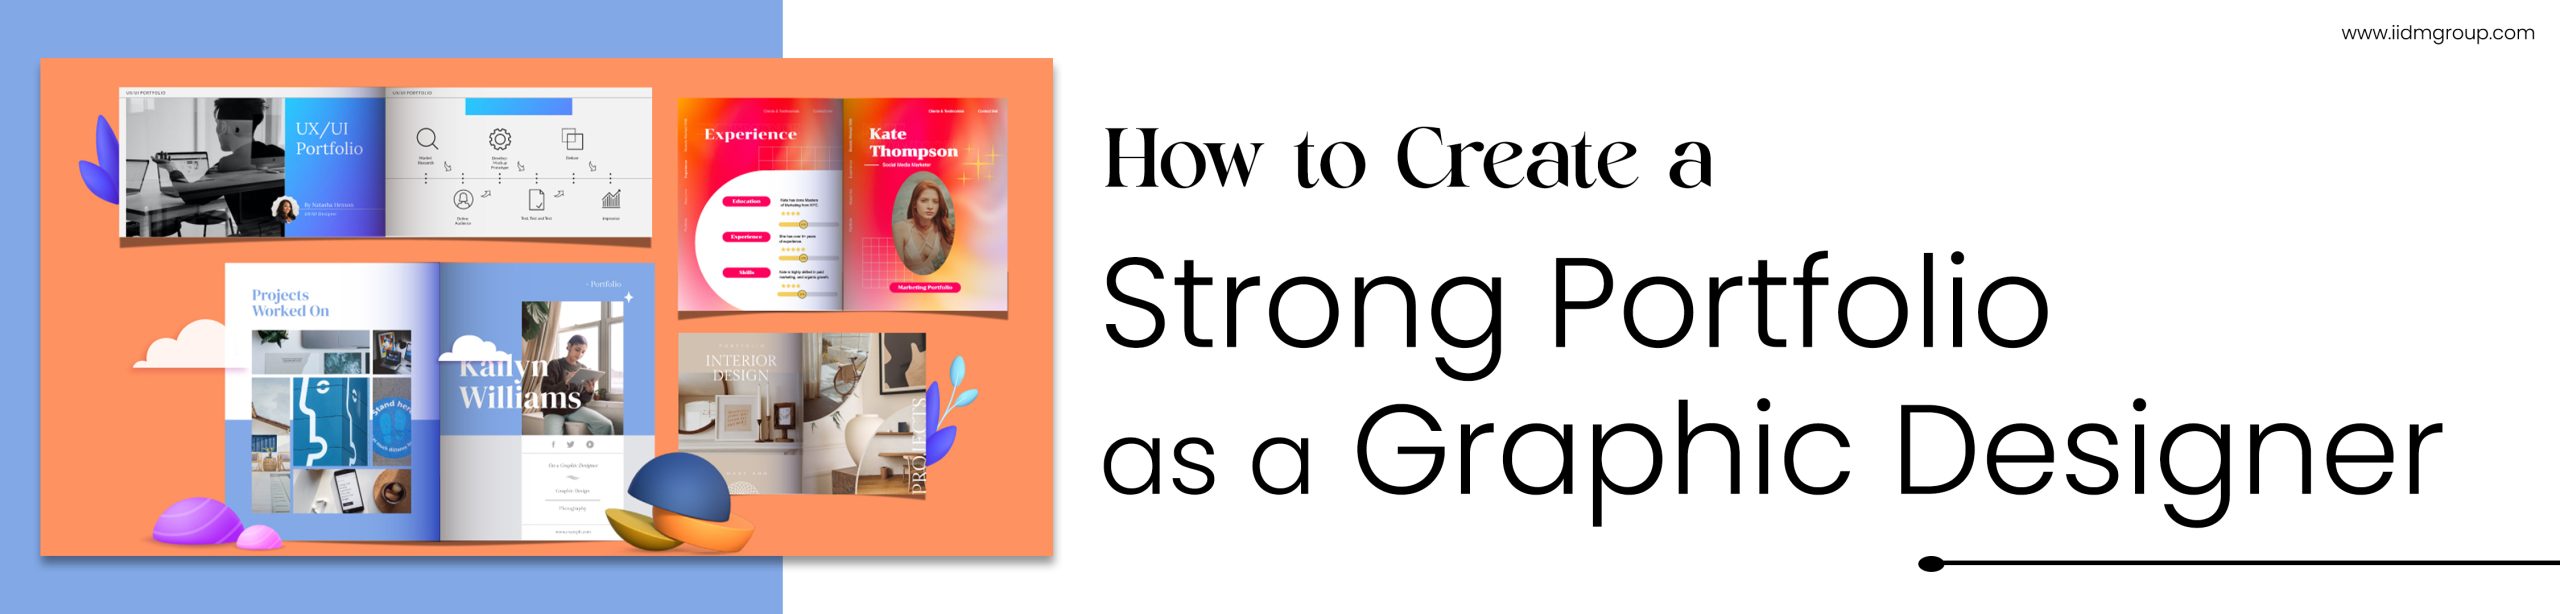 How to Create a Strong Portfolio as a Graphic Designer